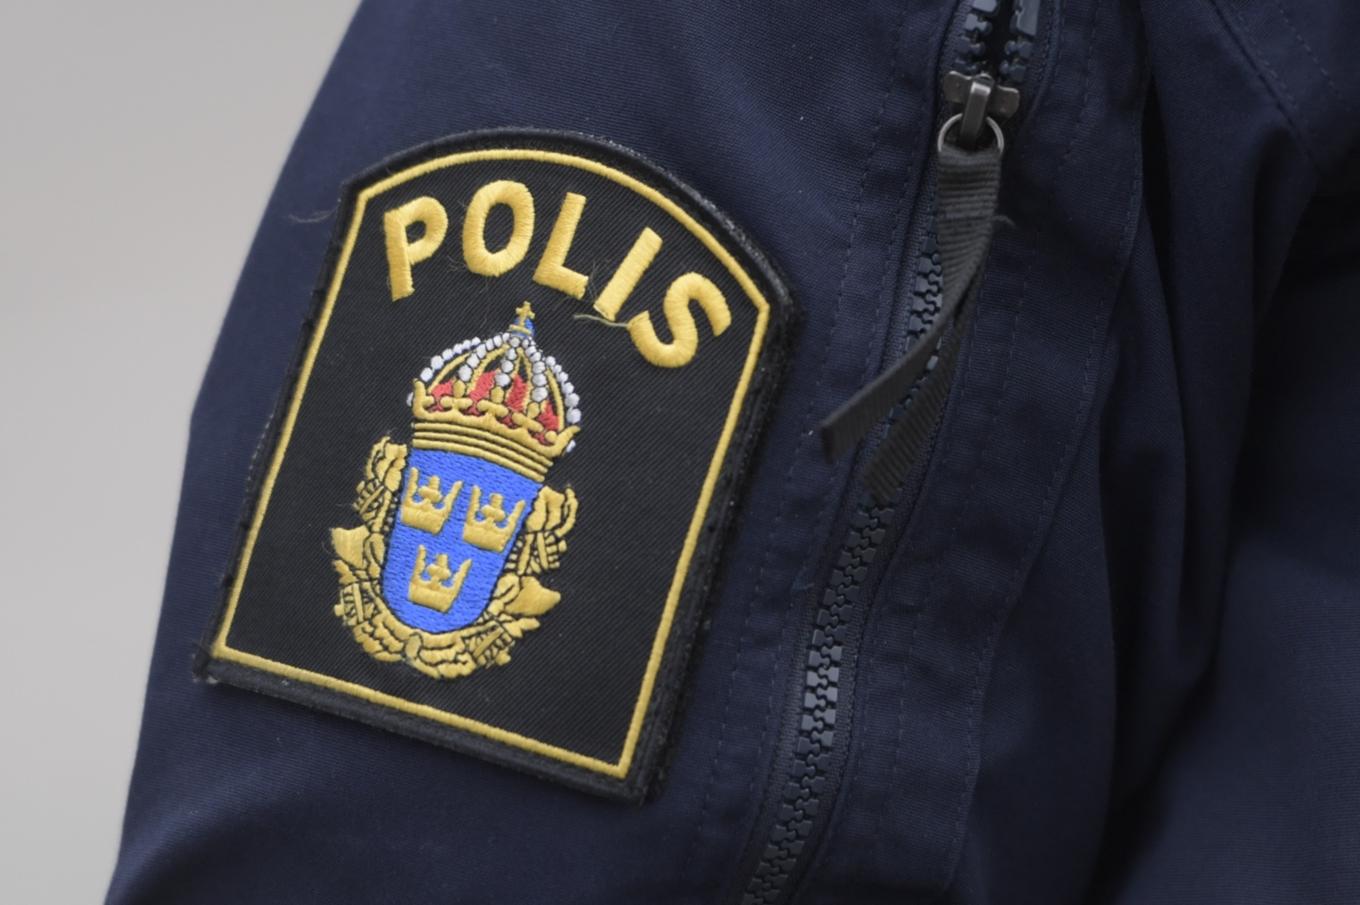 Polisanställda värvas av gängkriminella för att få information, visar en granskning av Dagens Nyheter. Arkivbild. Foto: Maja Suslin/TT